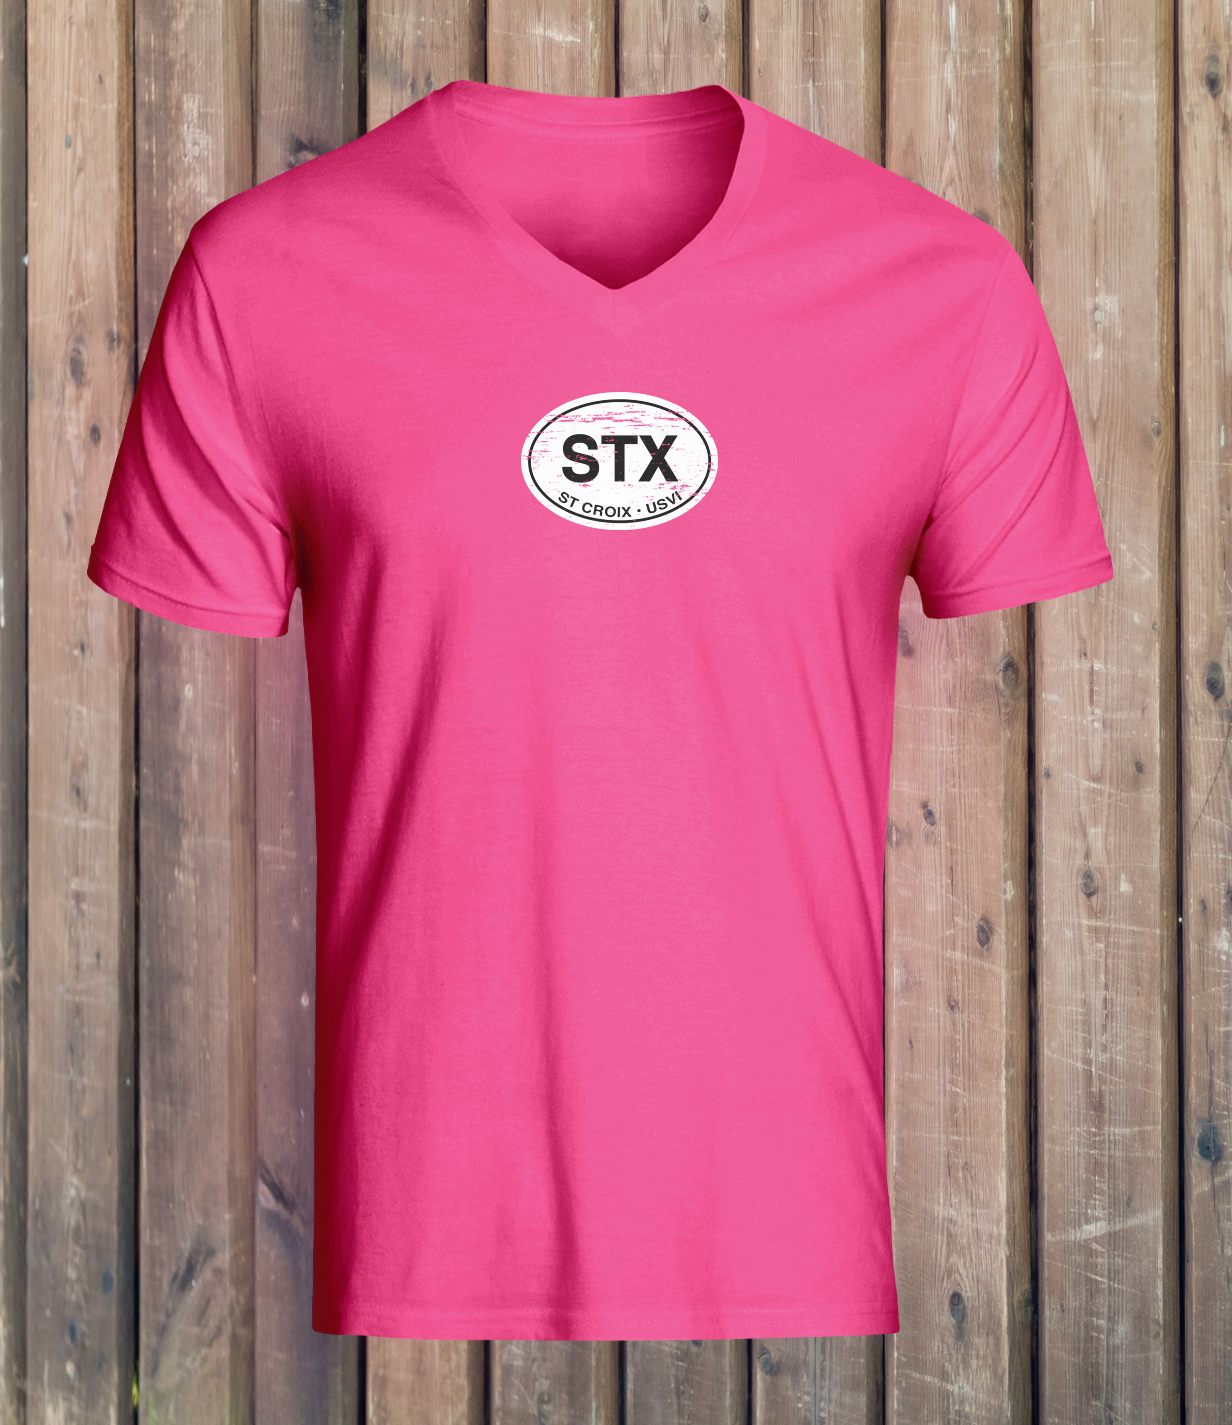 St Croix Women's Classic V-Neck T-Shirts - My Destination Location